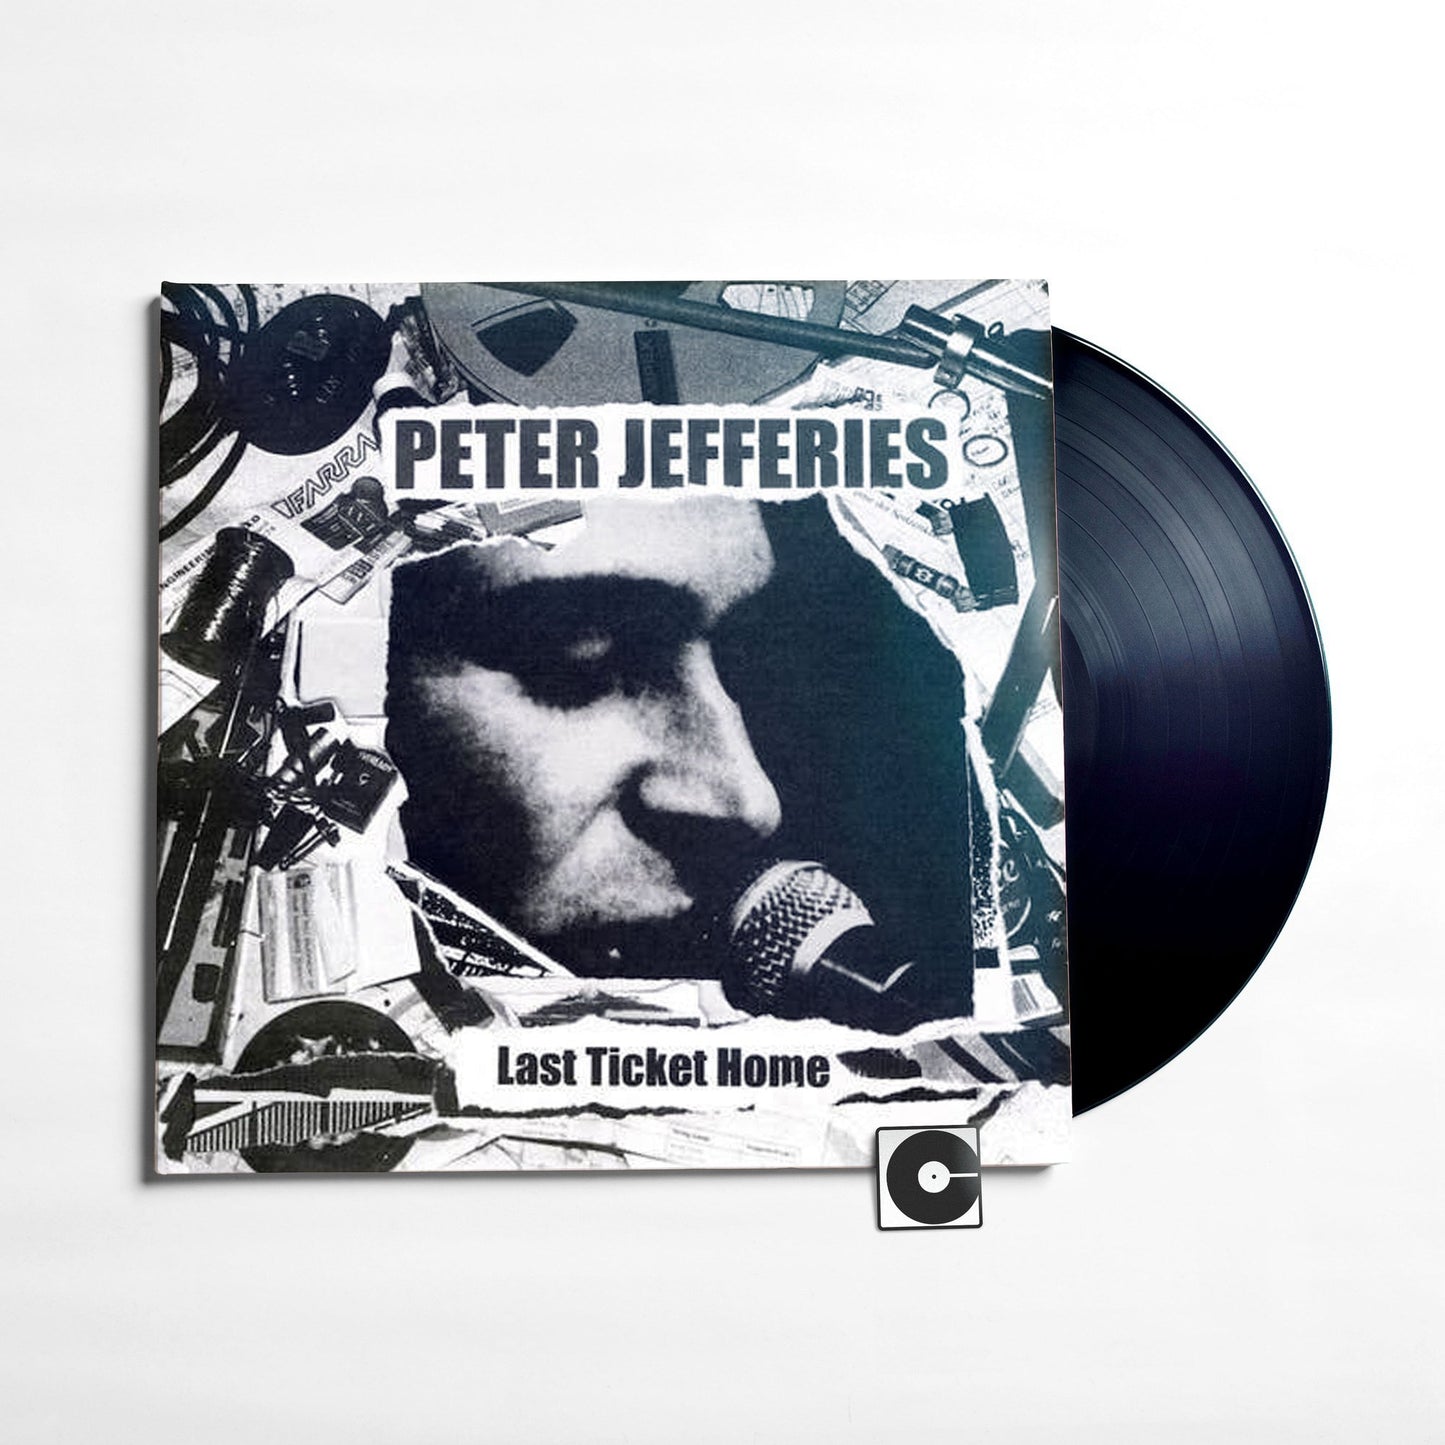 Peter Jefferies - "Last Ticket Home"